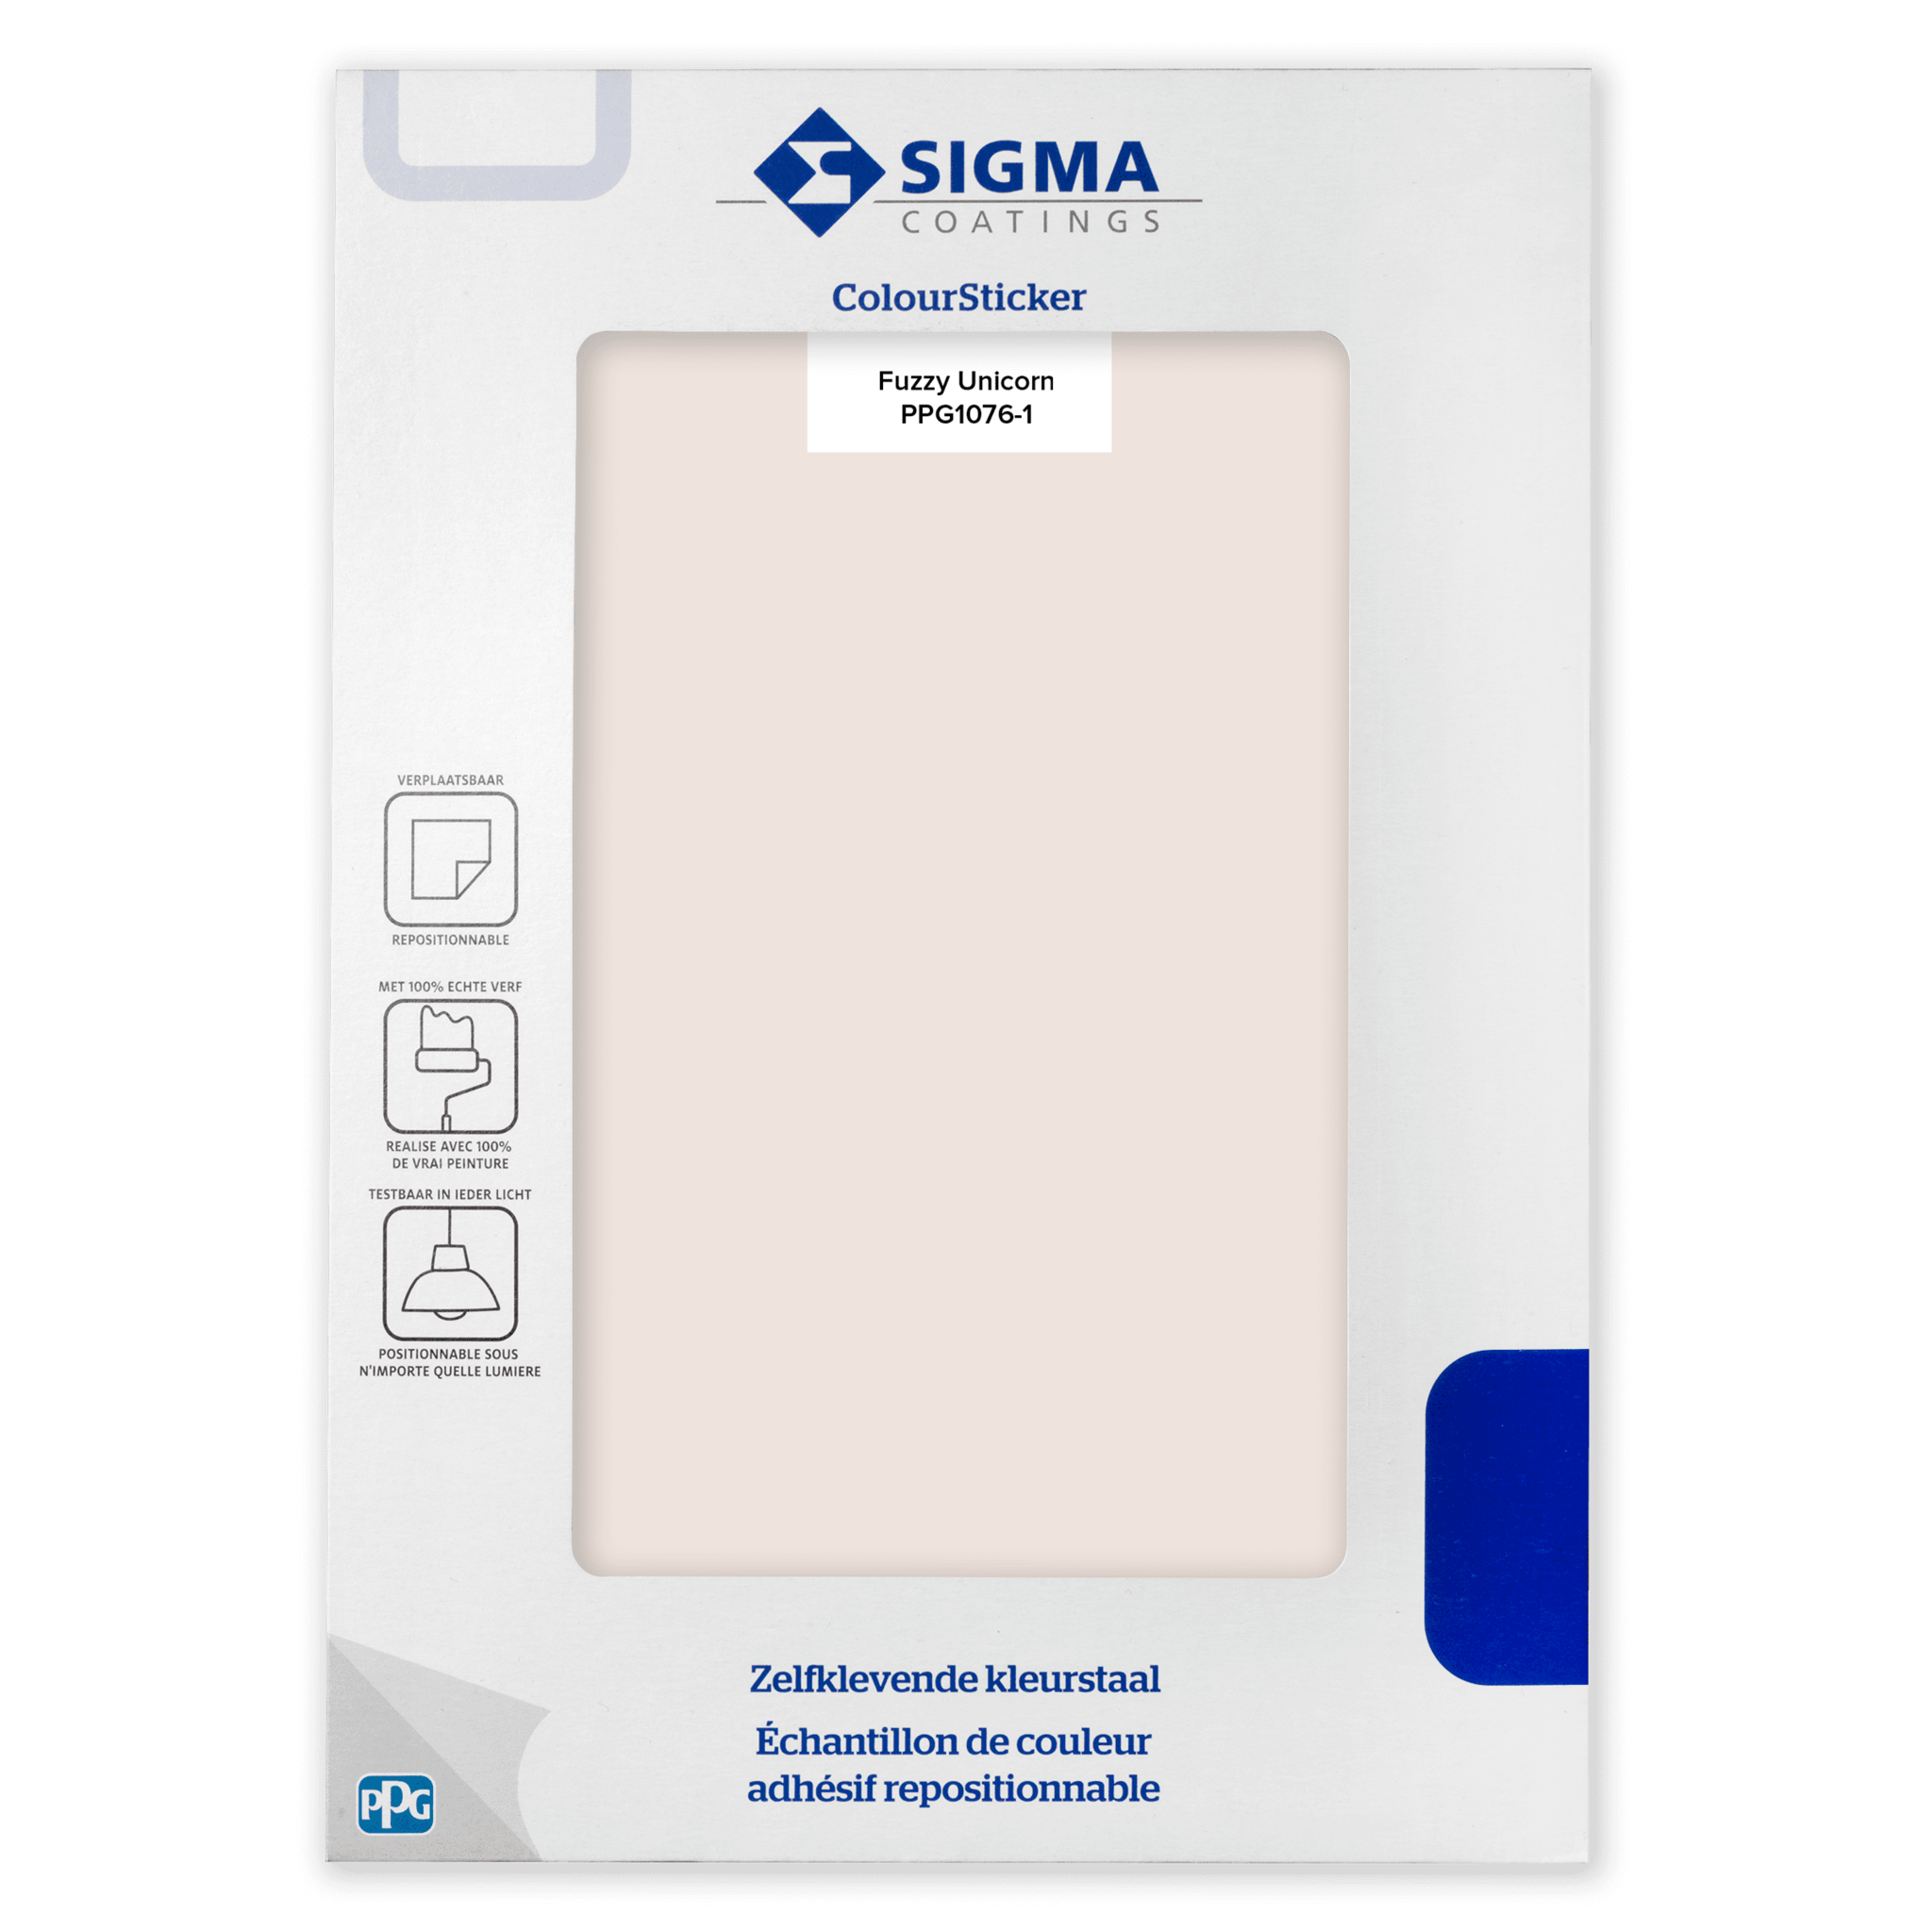 Sigma ColourSticker - Fuzzy Unicorn 1076-1